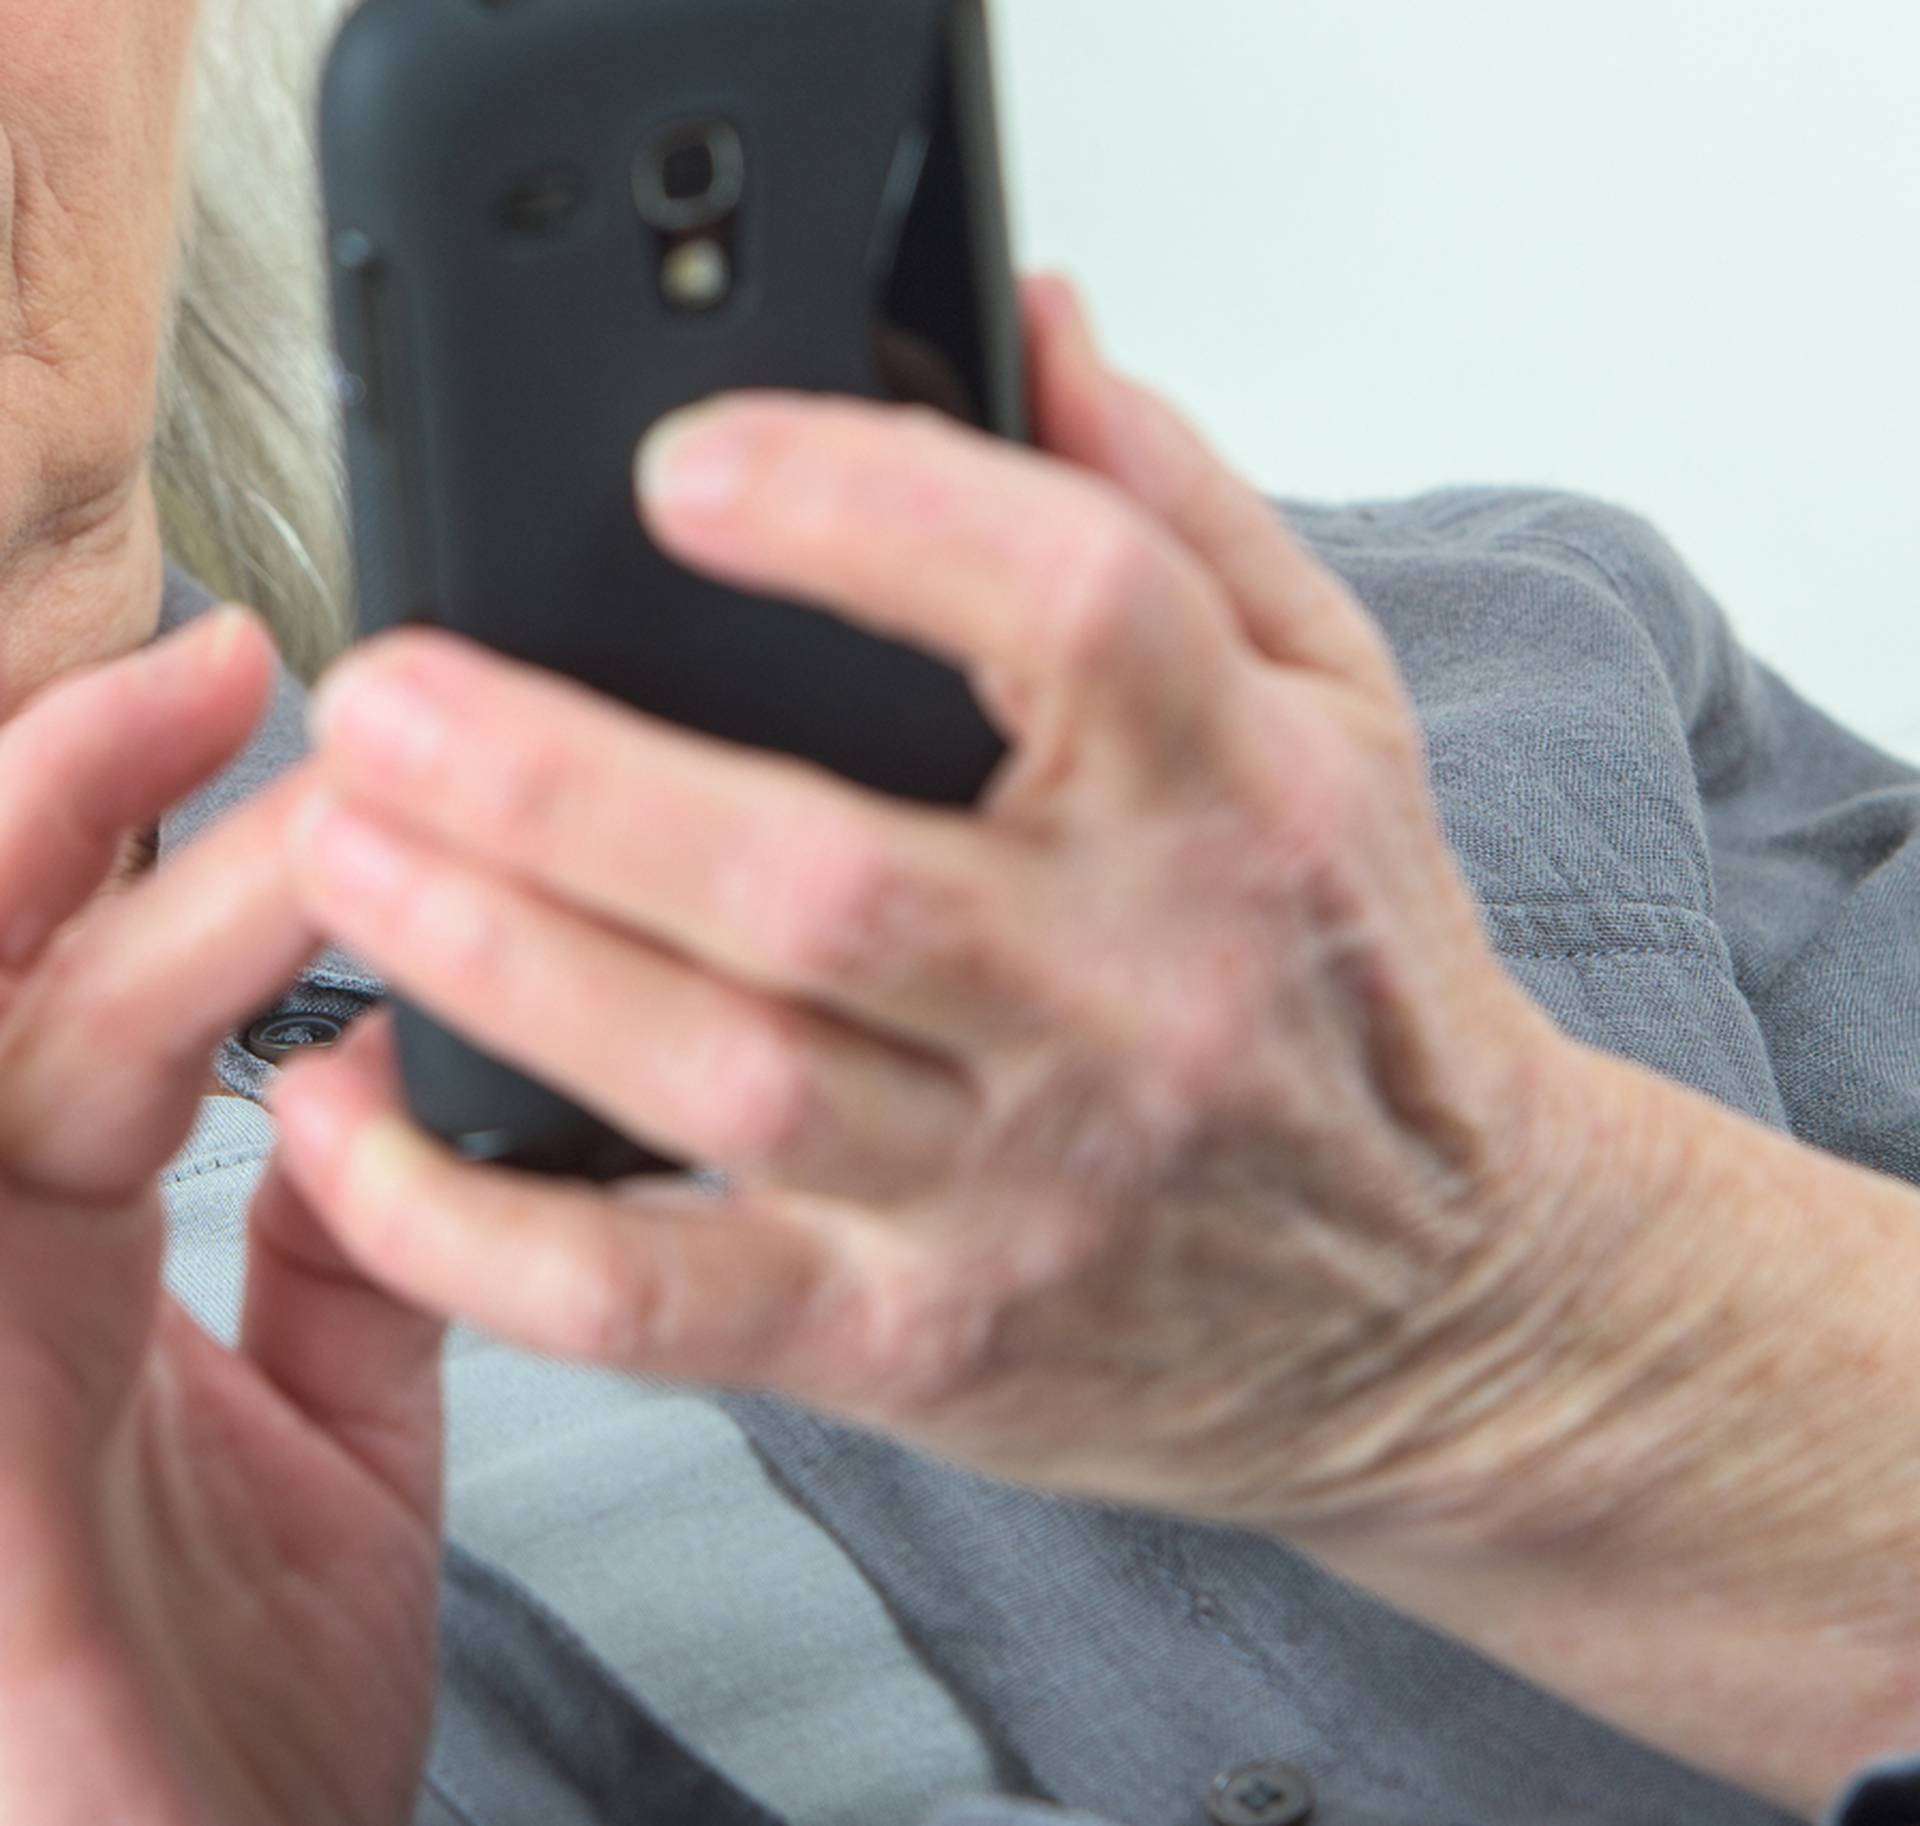 Uz ove aplikacije baka i djed moći će lakše koristiti telefone